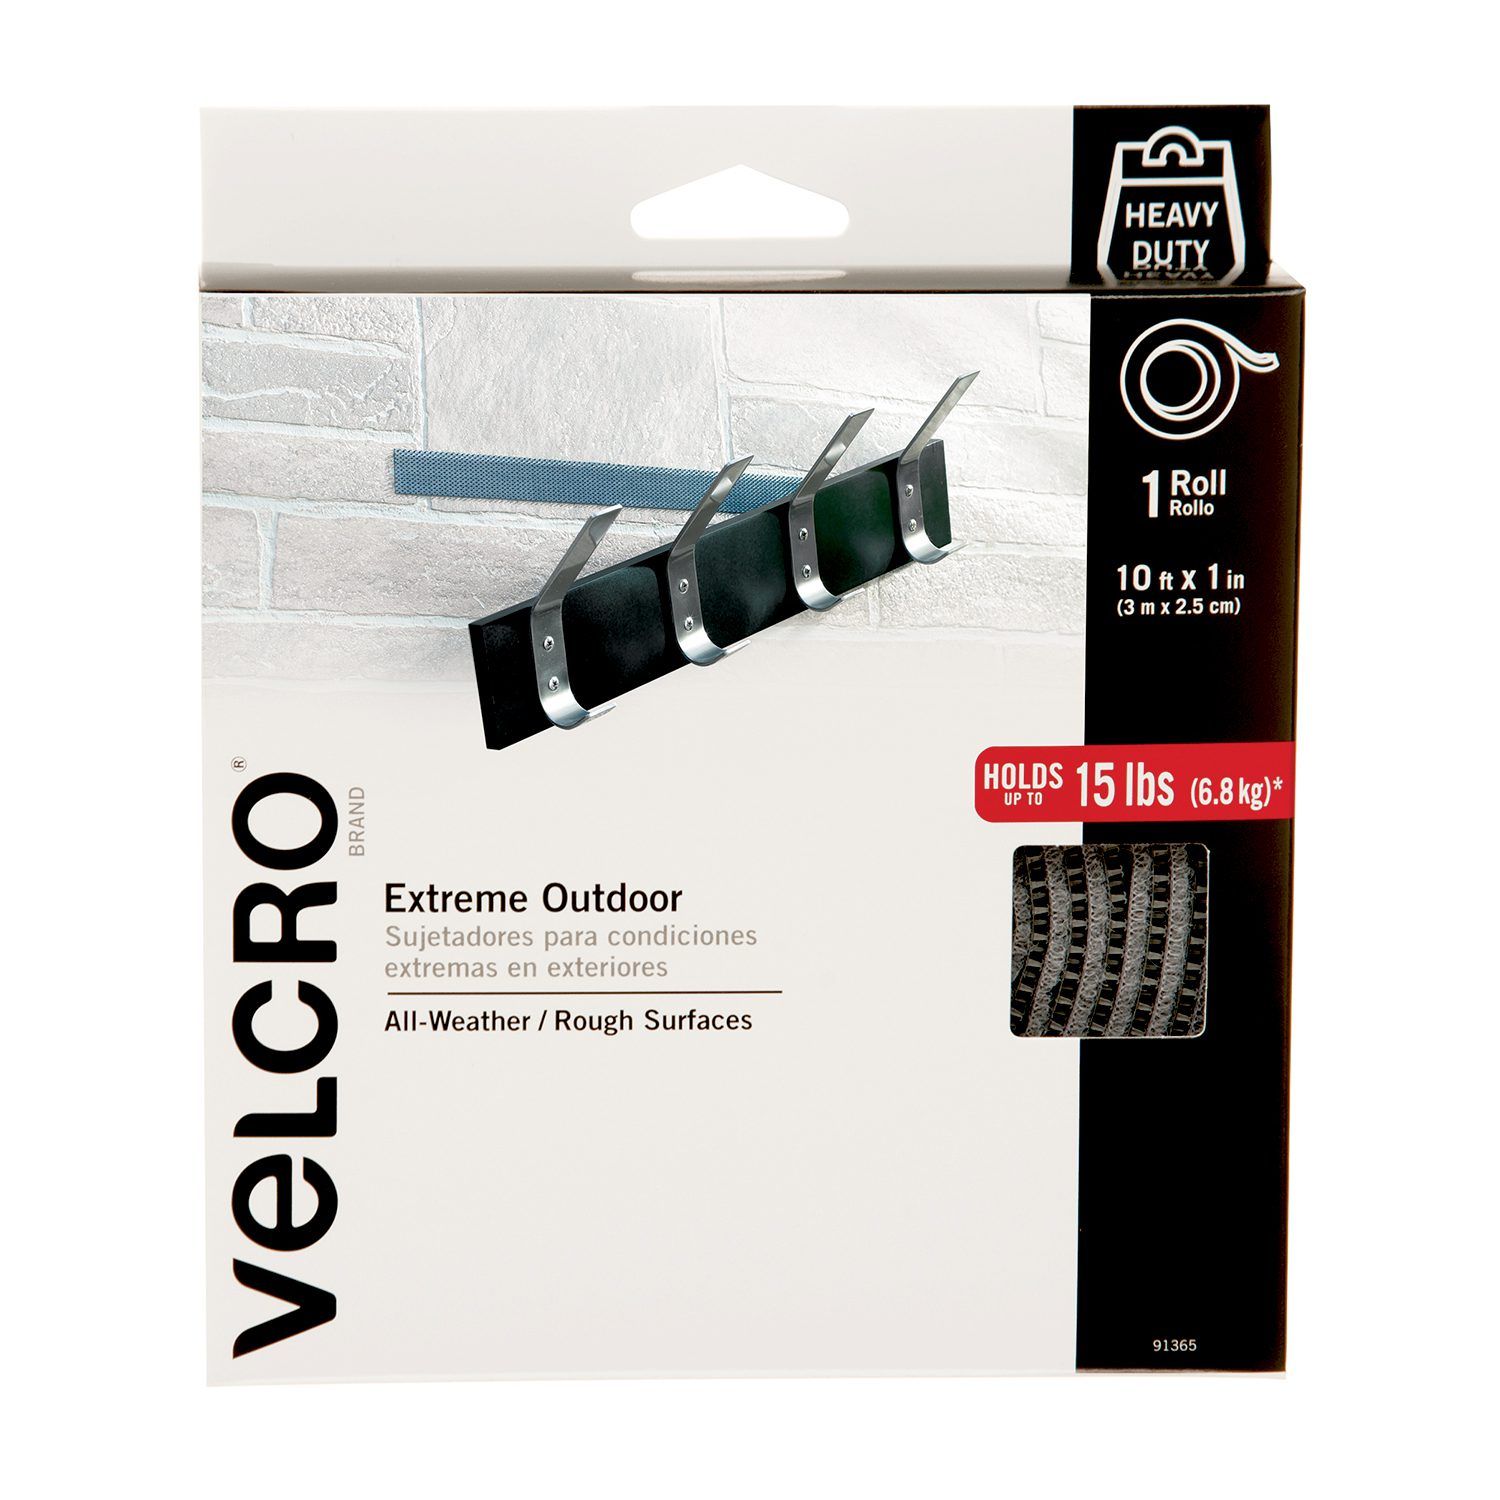 Velcro® Brand 6 x 6 Industrial Adhesive Backed Hook & LONG Loop